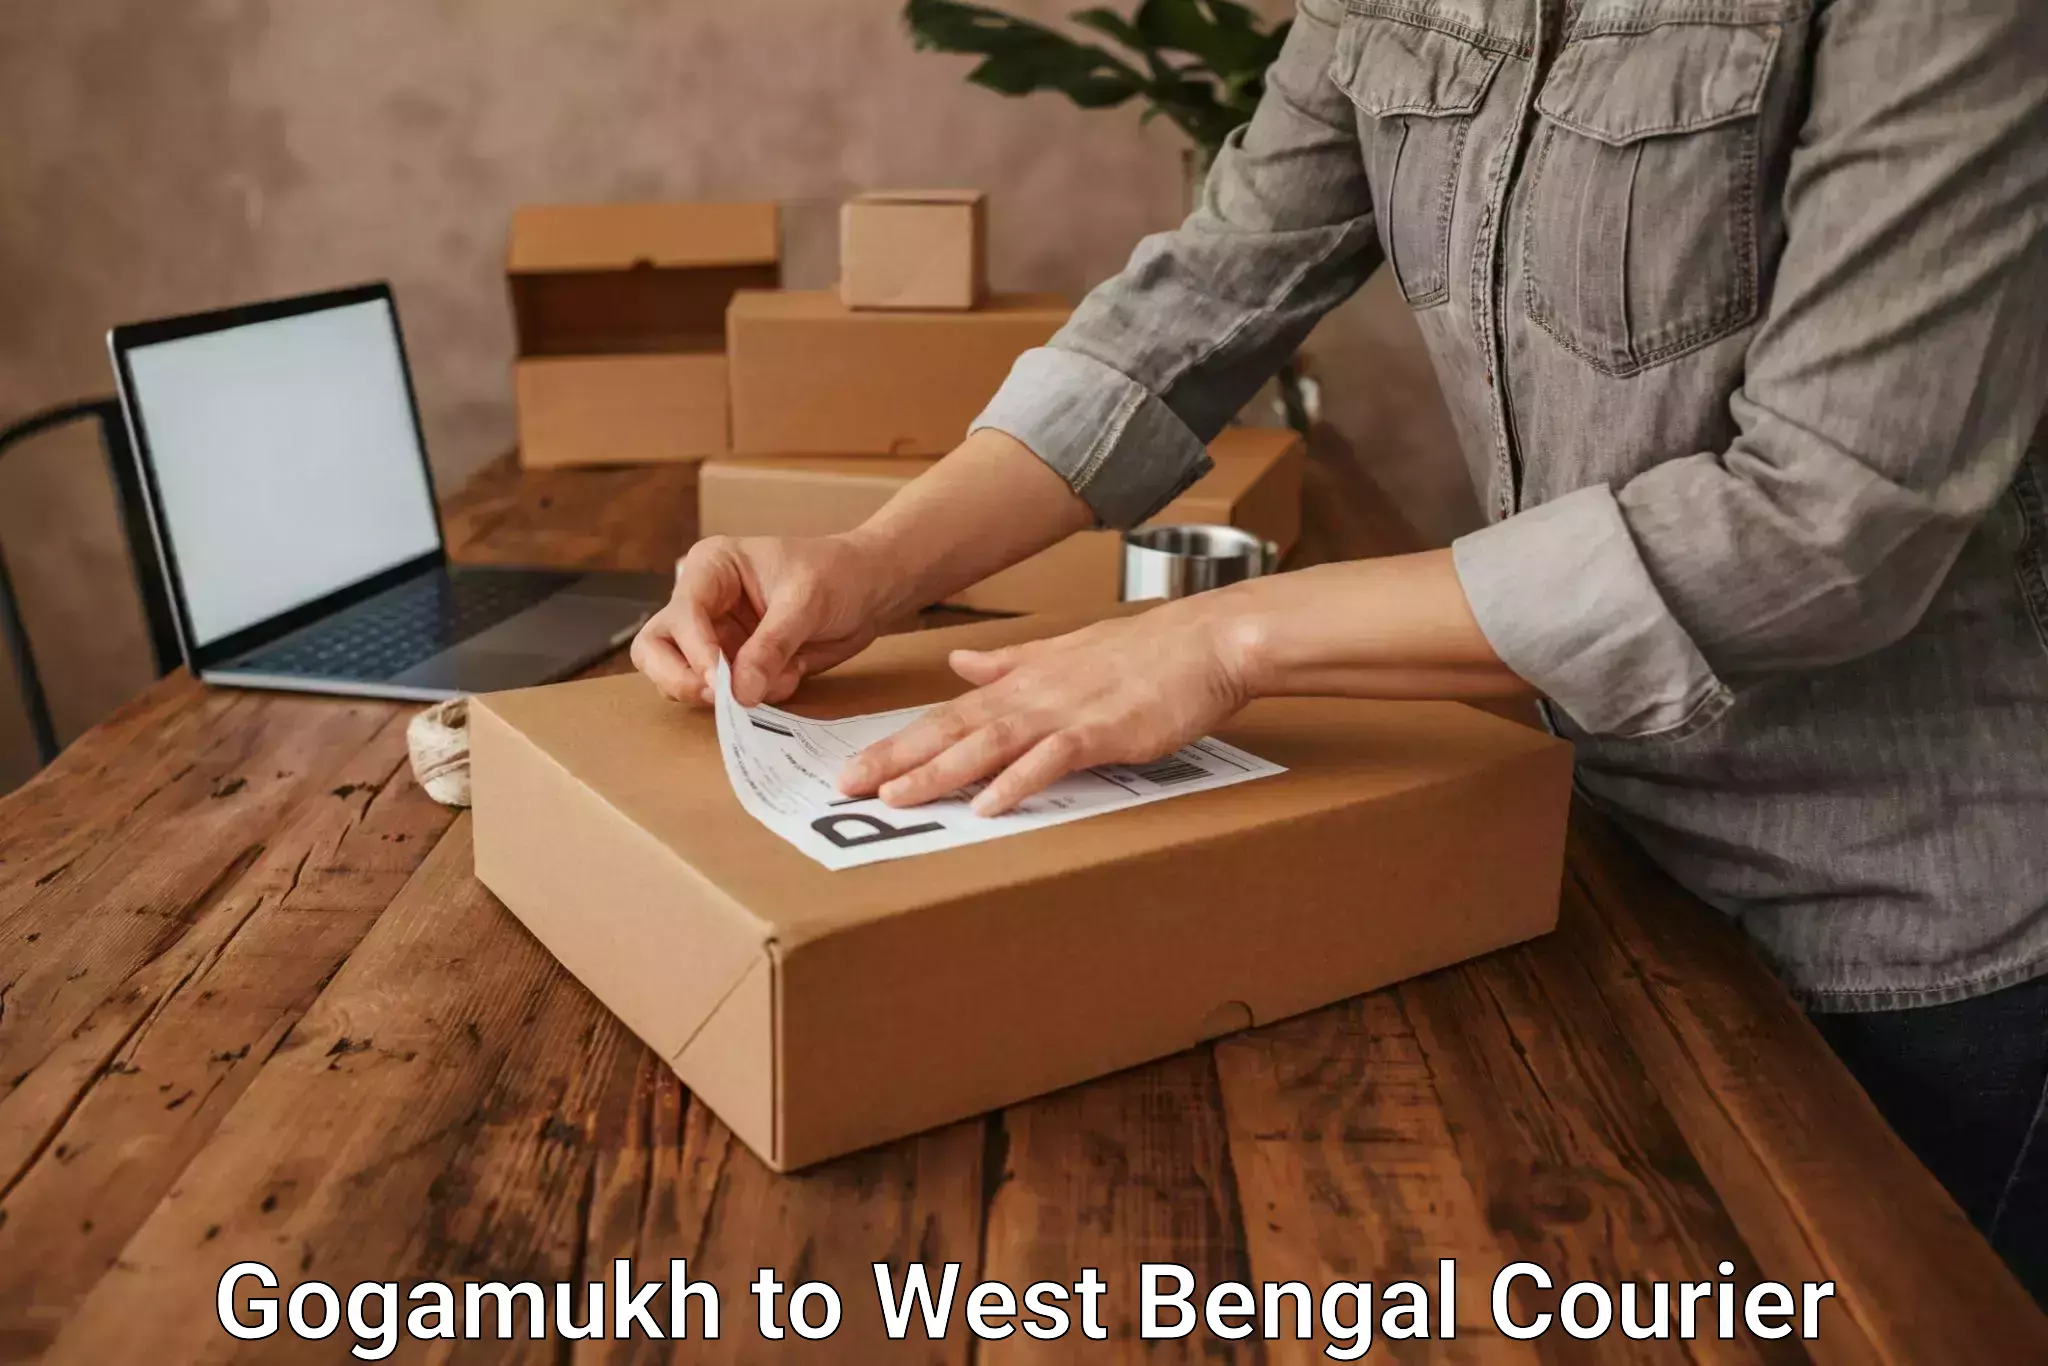 Efficient parcel service Gogamukh to Kolkata Port